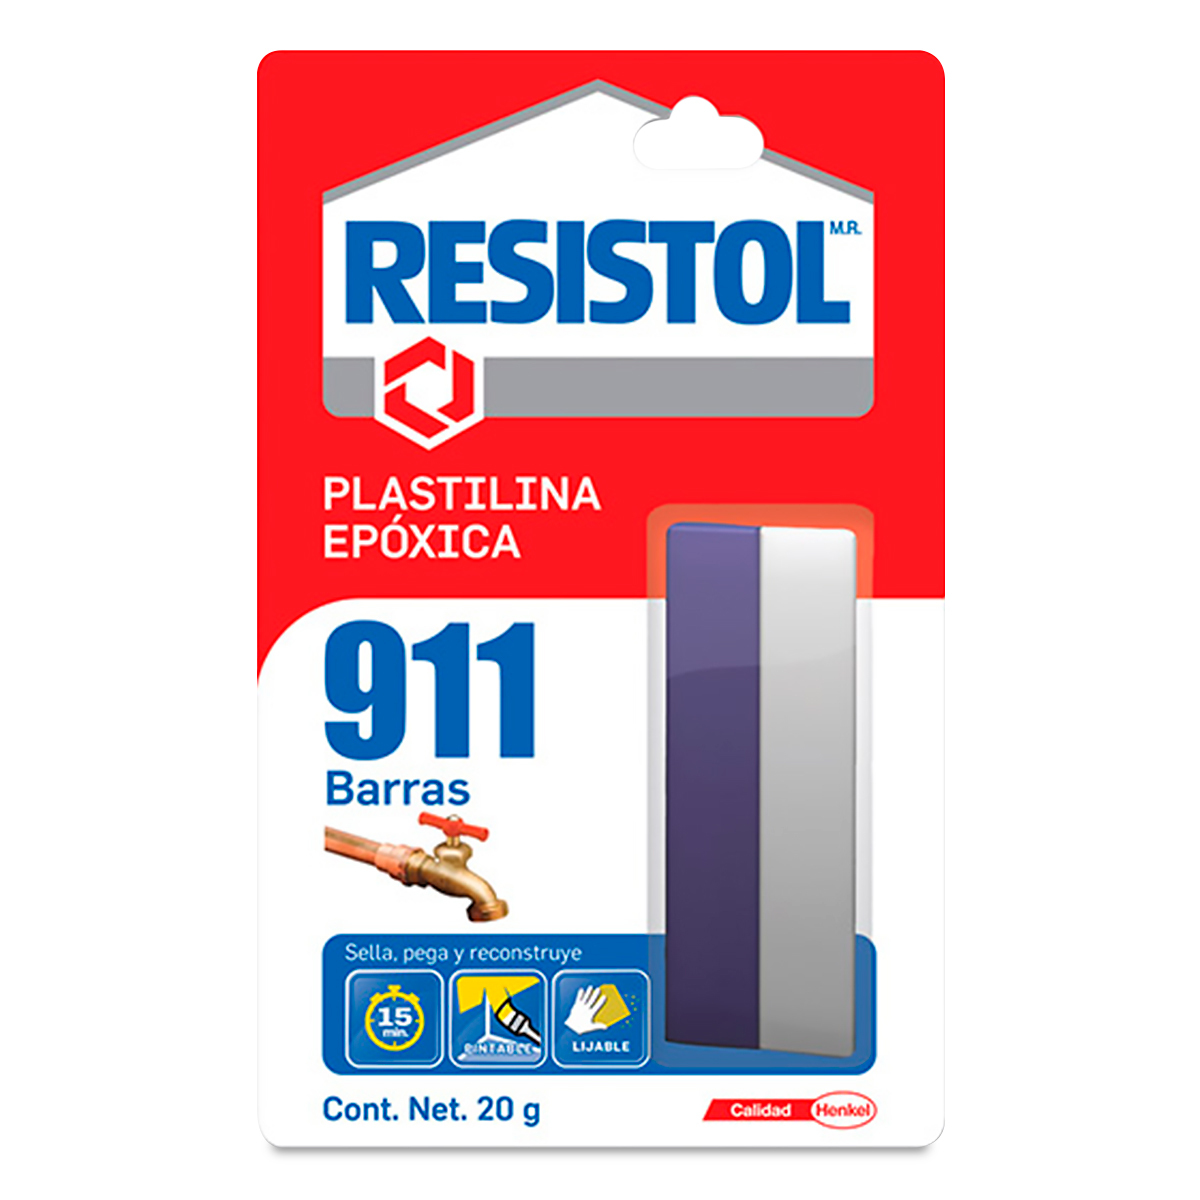 Plastilina Epóxica Arregla Todo Resistol 911 / 20 gr / 1 pieza